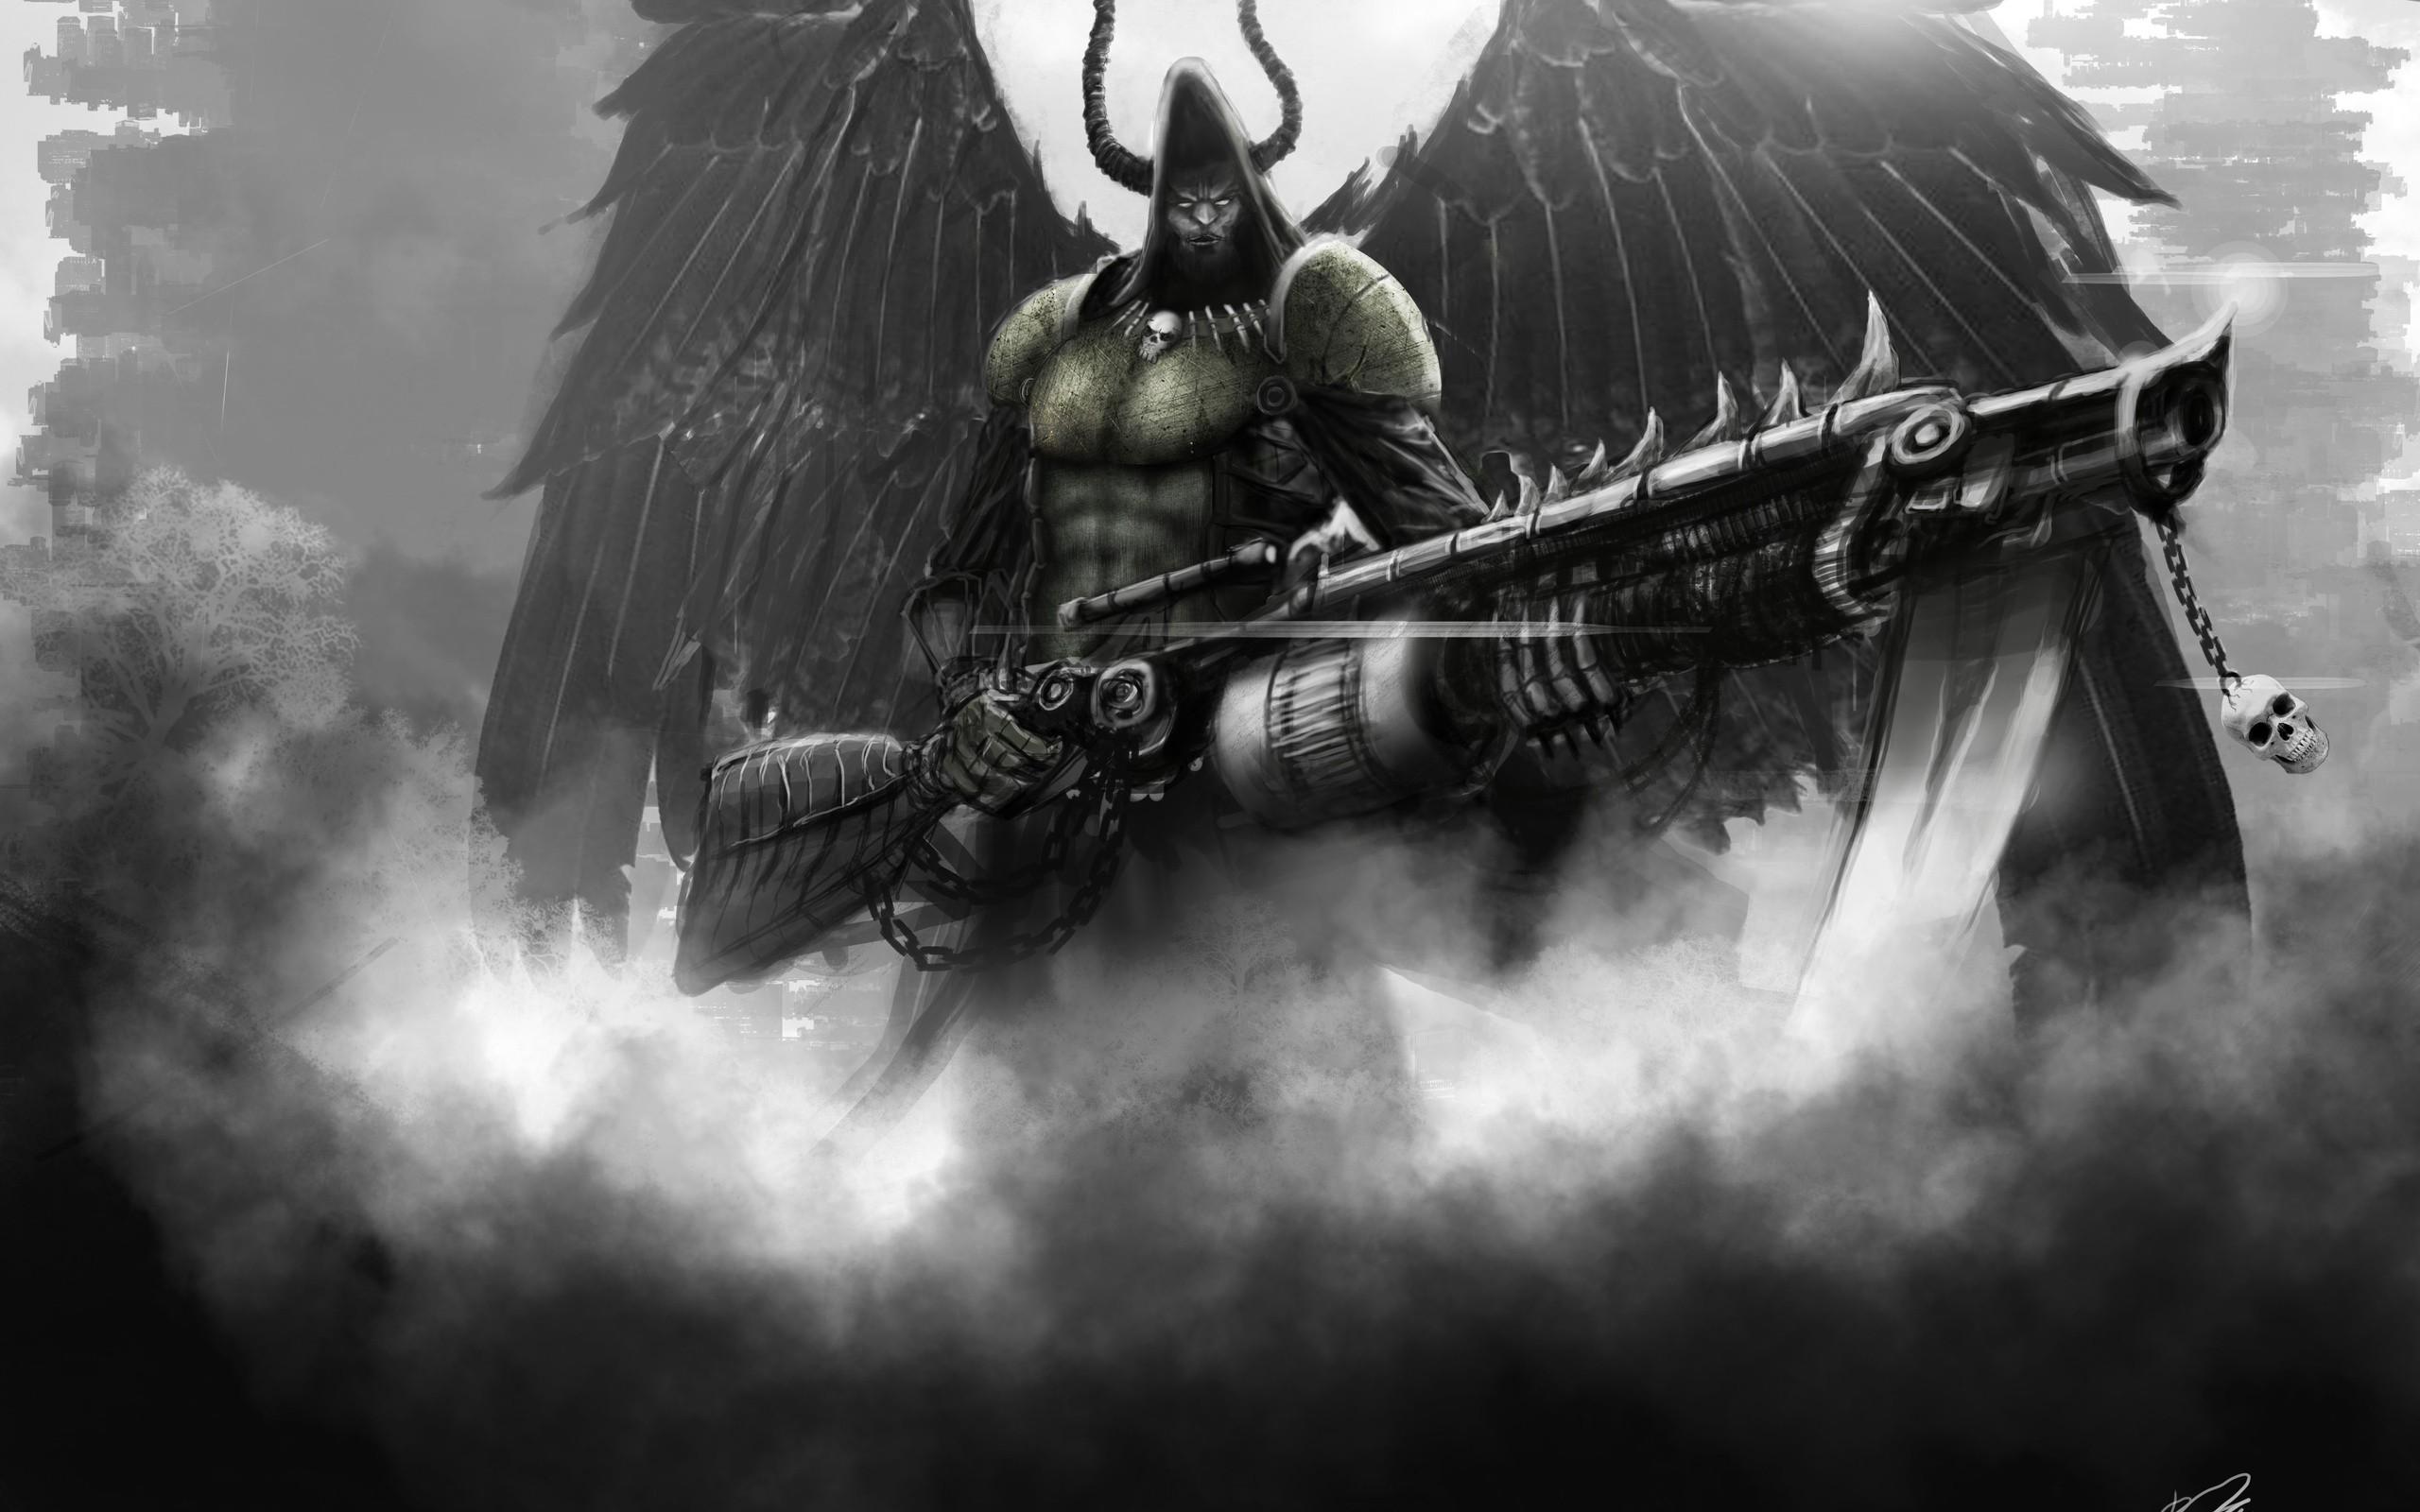 Weapons, Dark, angel, Warrior Humor Wallpaper, Man, best Humor Image